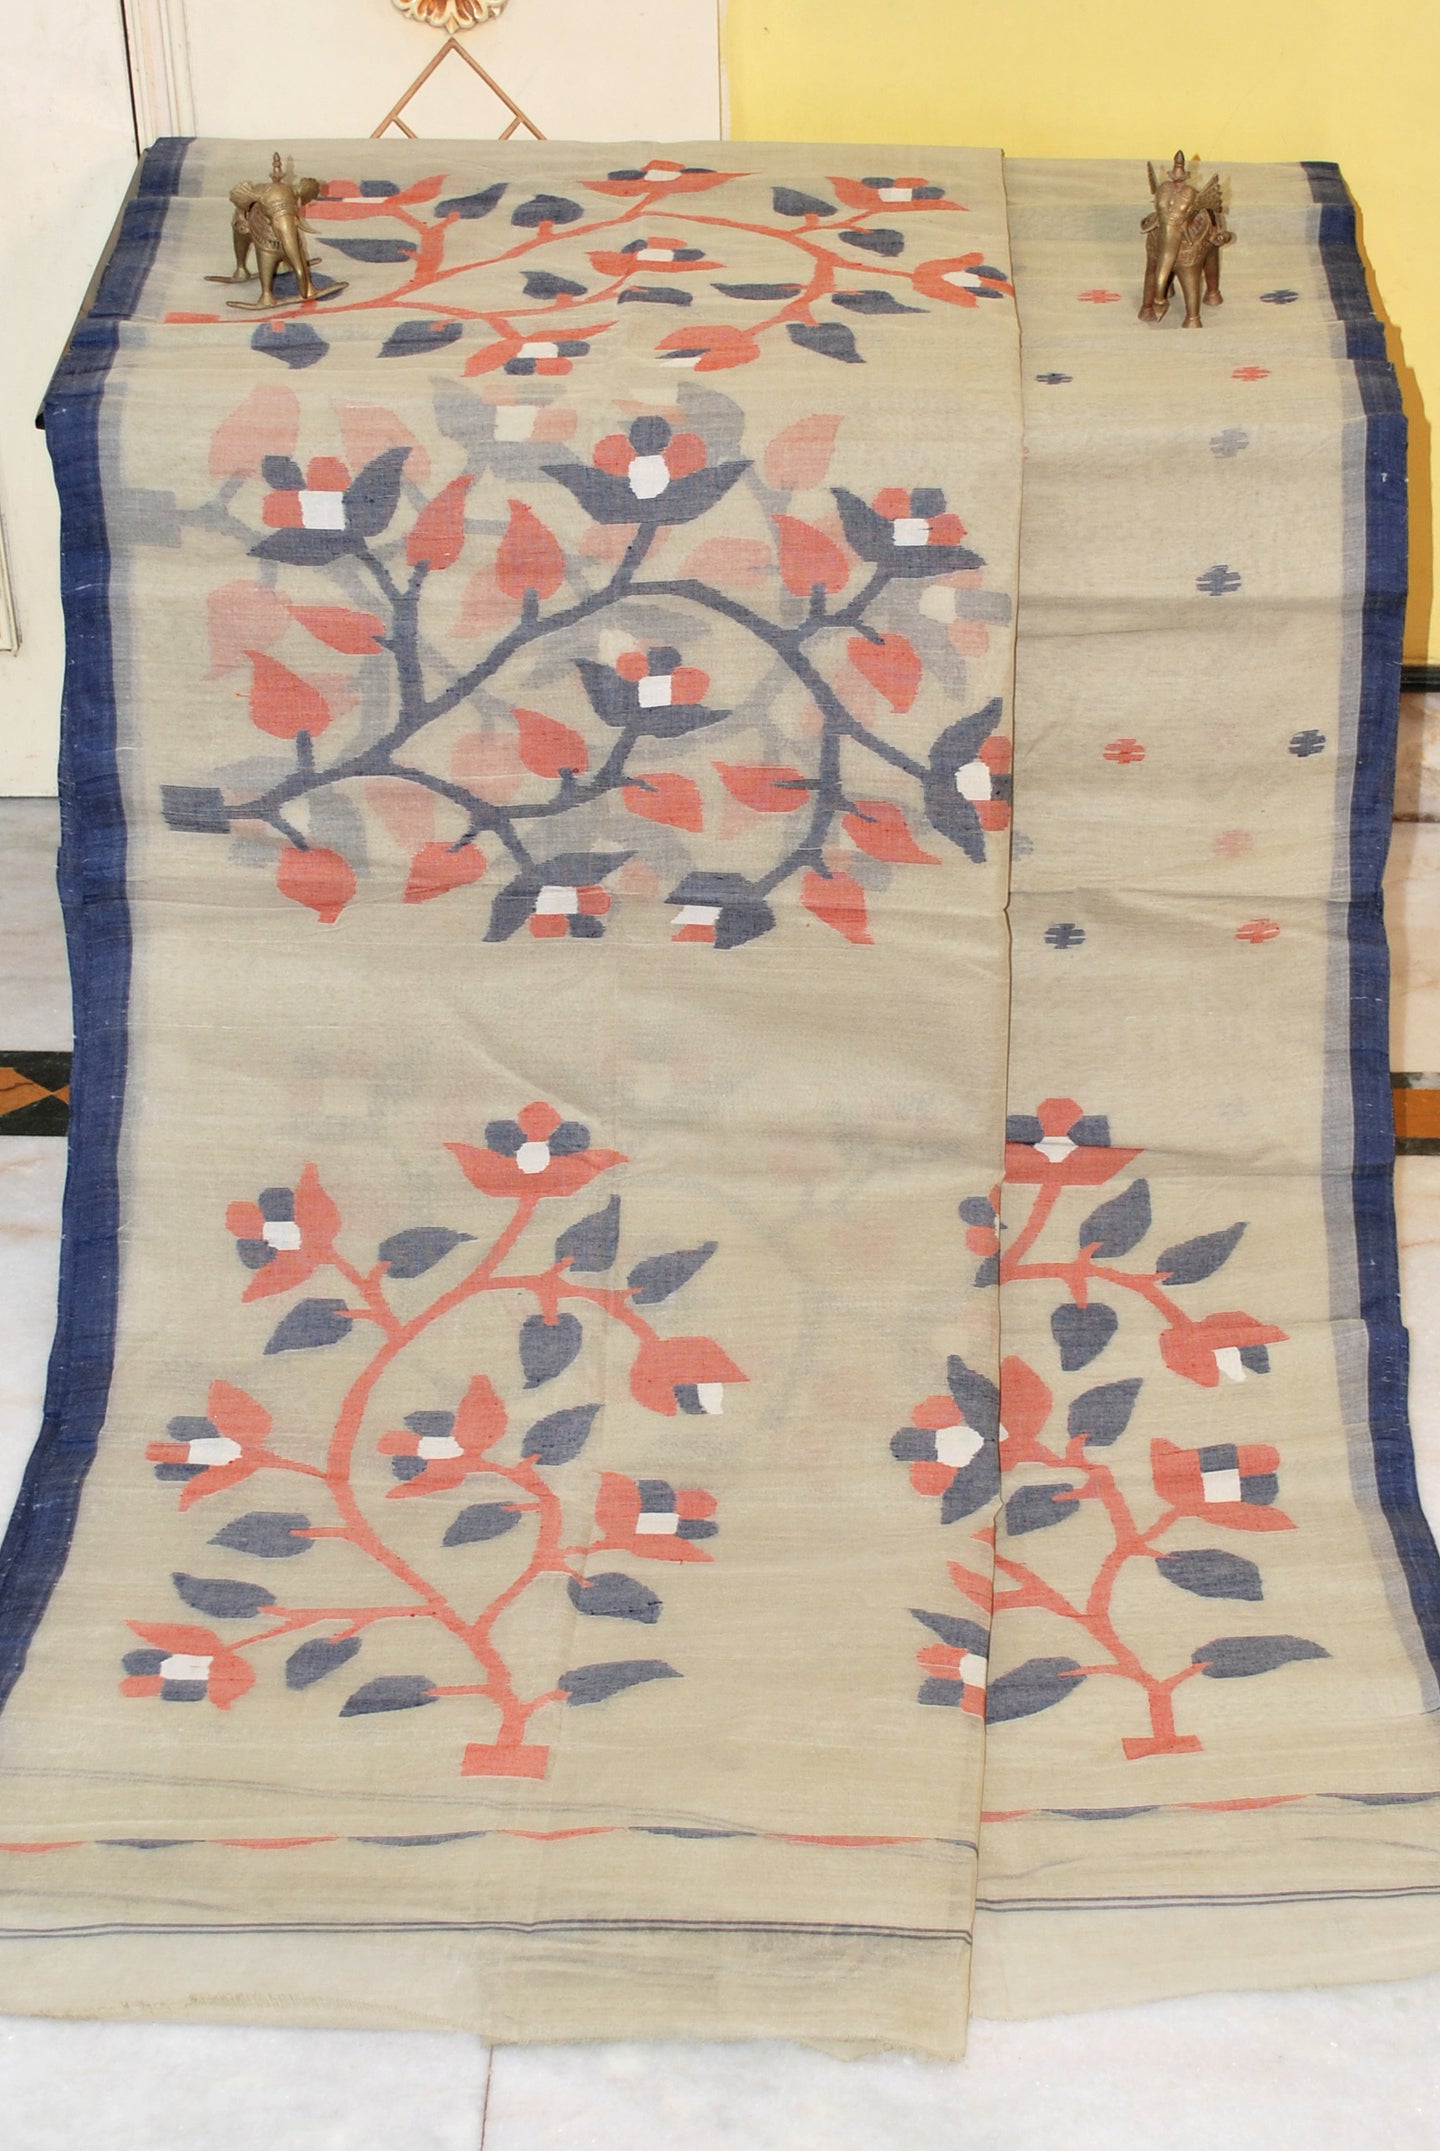 Skirt Nakshi Hand Work Jamdani Saree in Beige, Midnight Blue, Brown and Off White Thread Work